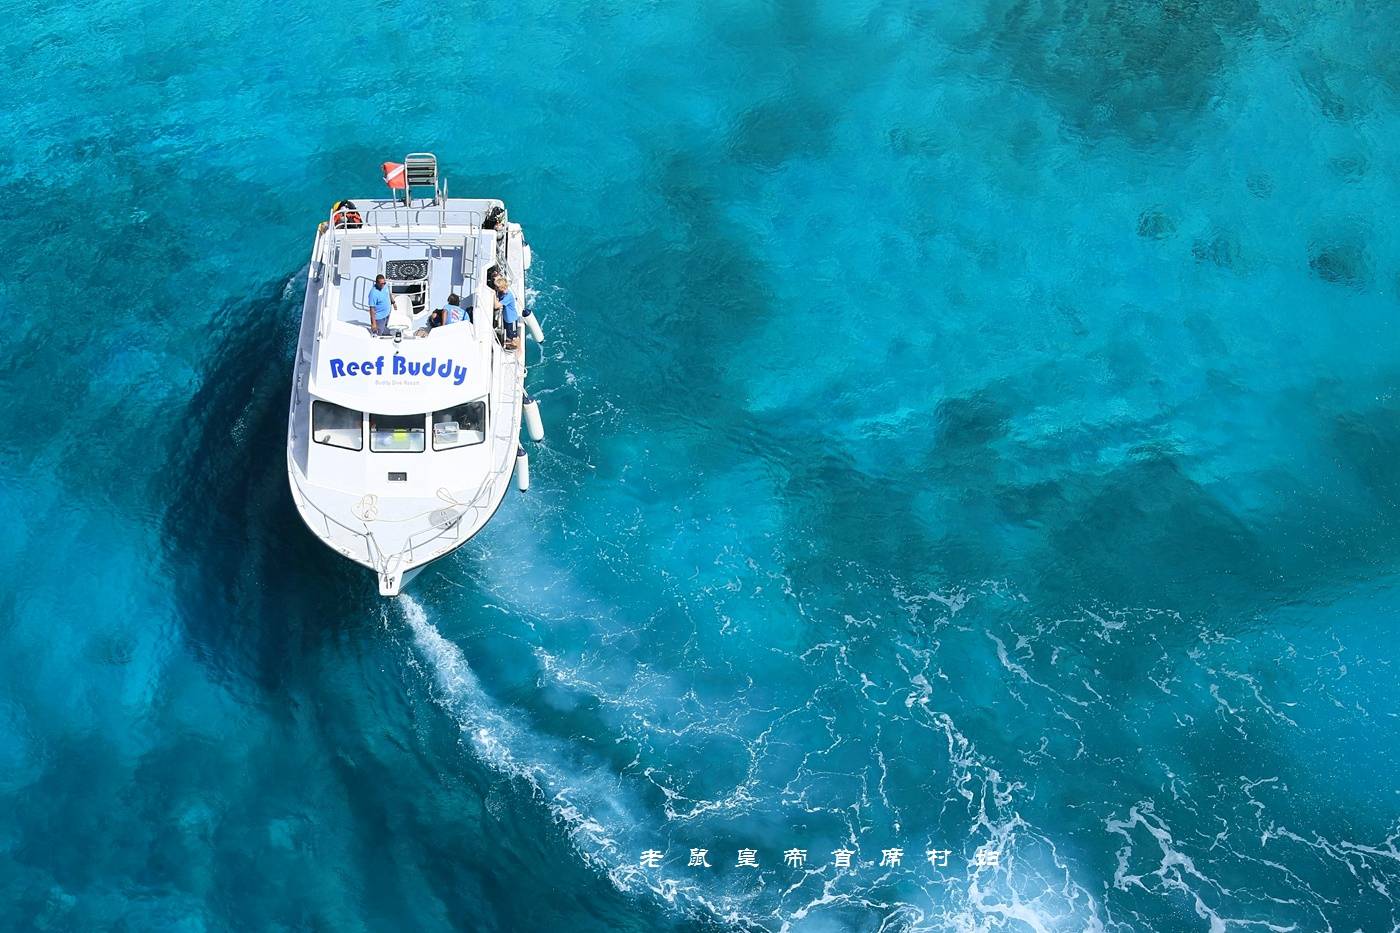 珊瑚保护工作世界第一竟是这个加勒比小岛国：海蓝景美人幸福